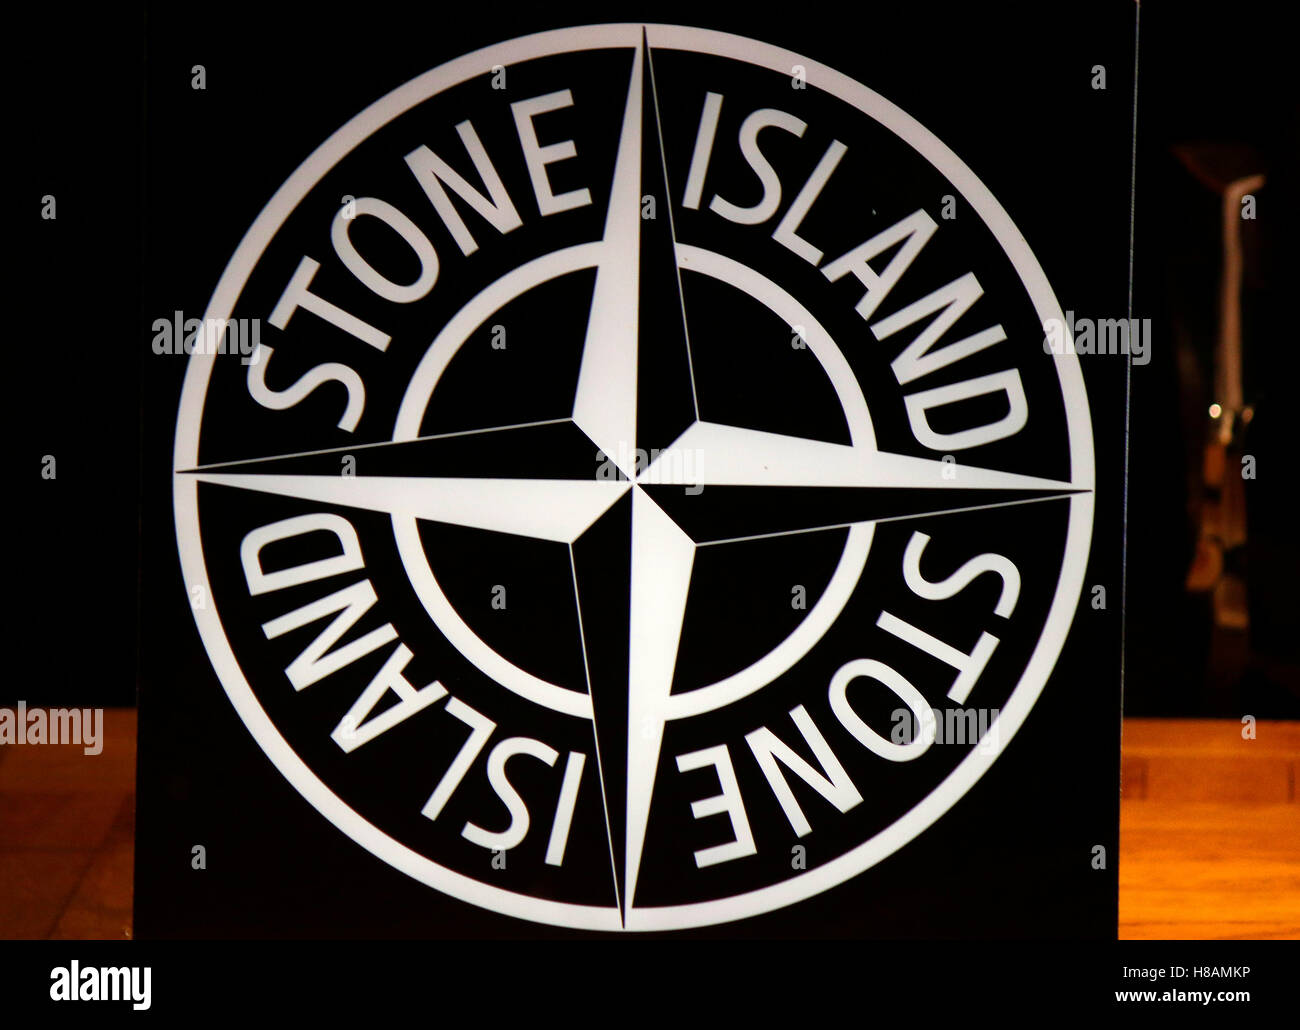 das Logo der Marke "Stone Island", Berlin Stock Photo - Alamy